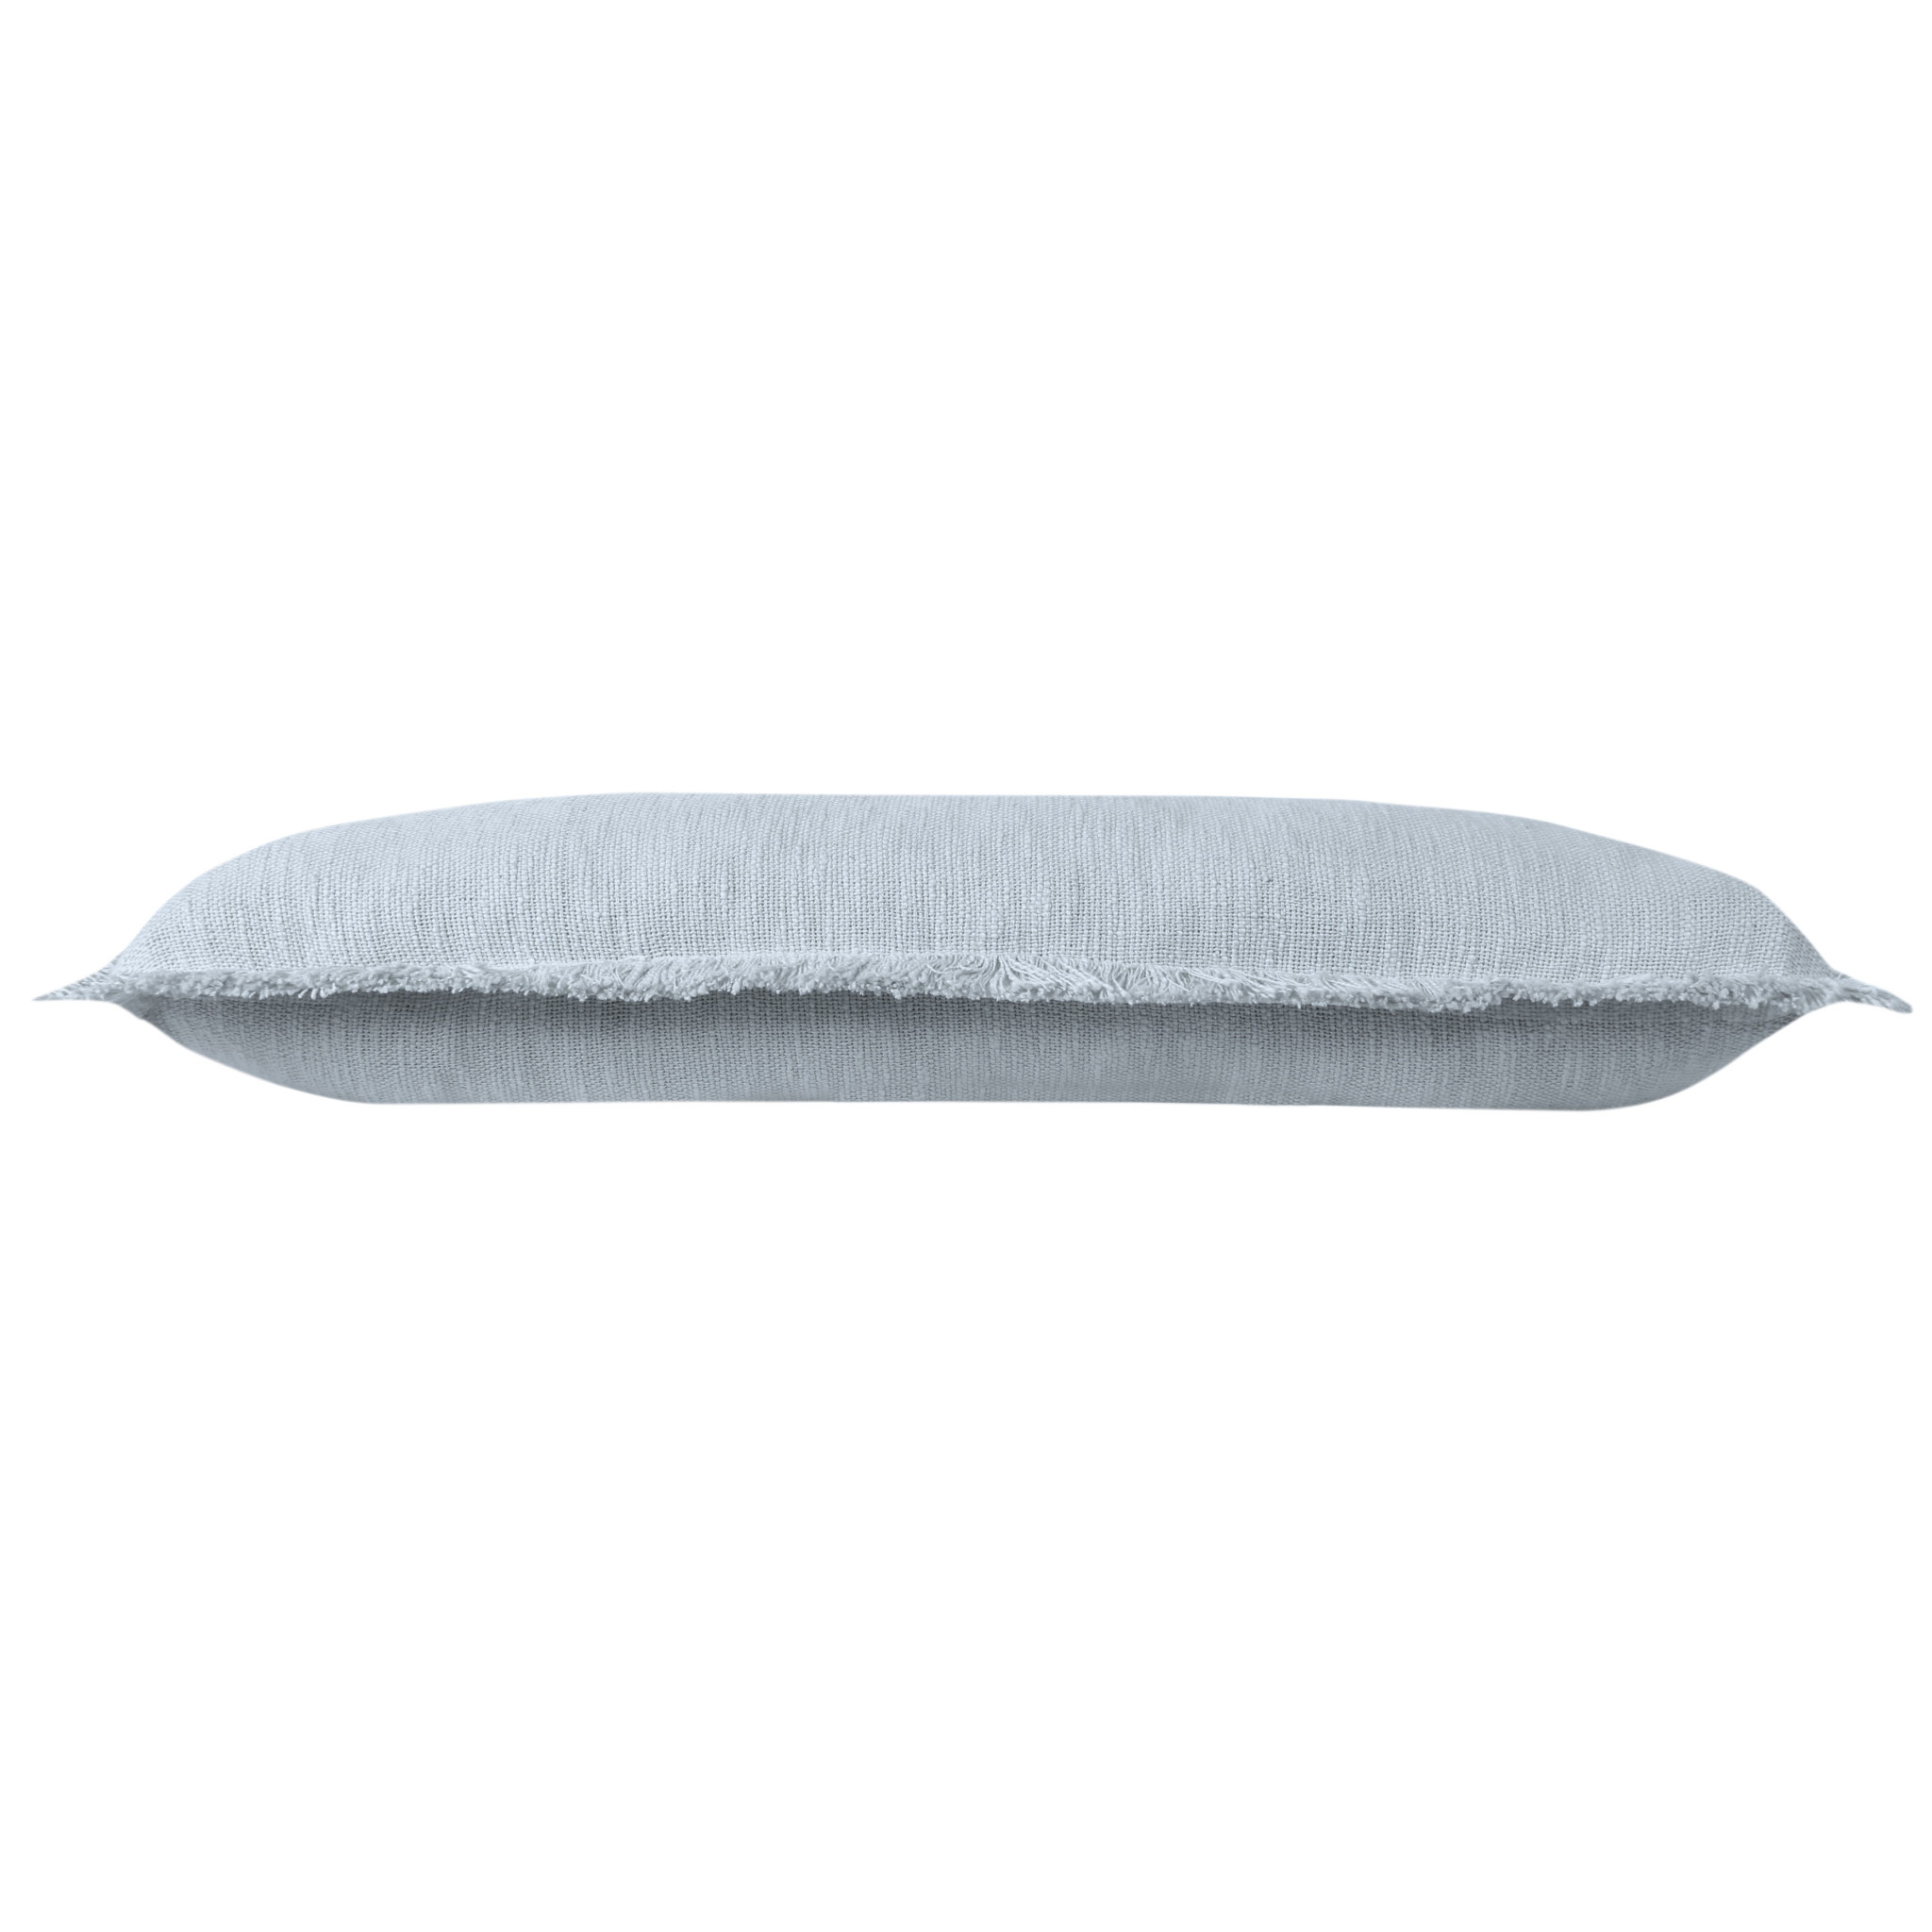 14" X 36" Gray 100% Cotton Zippered Pillow-517262-1